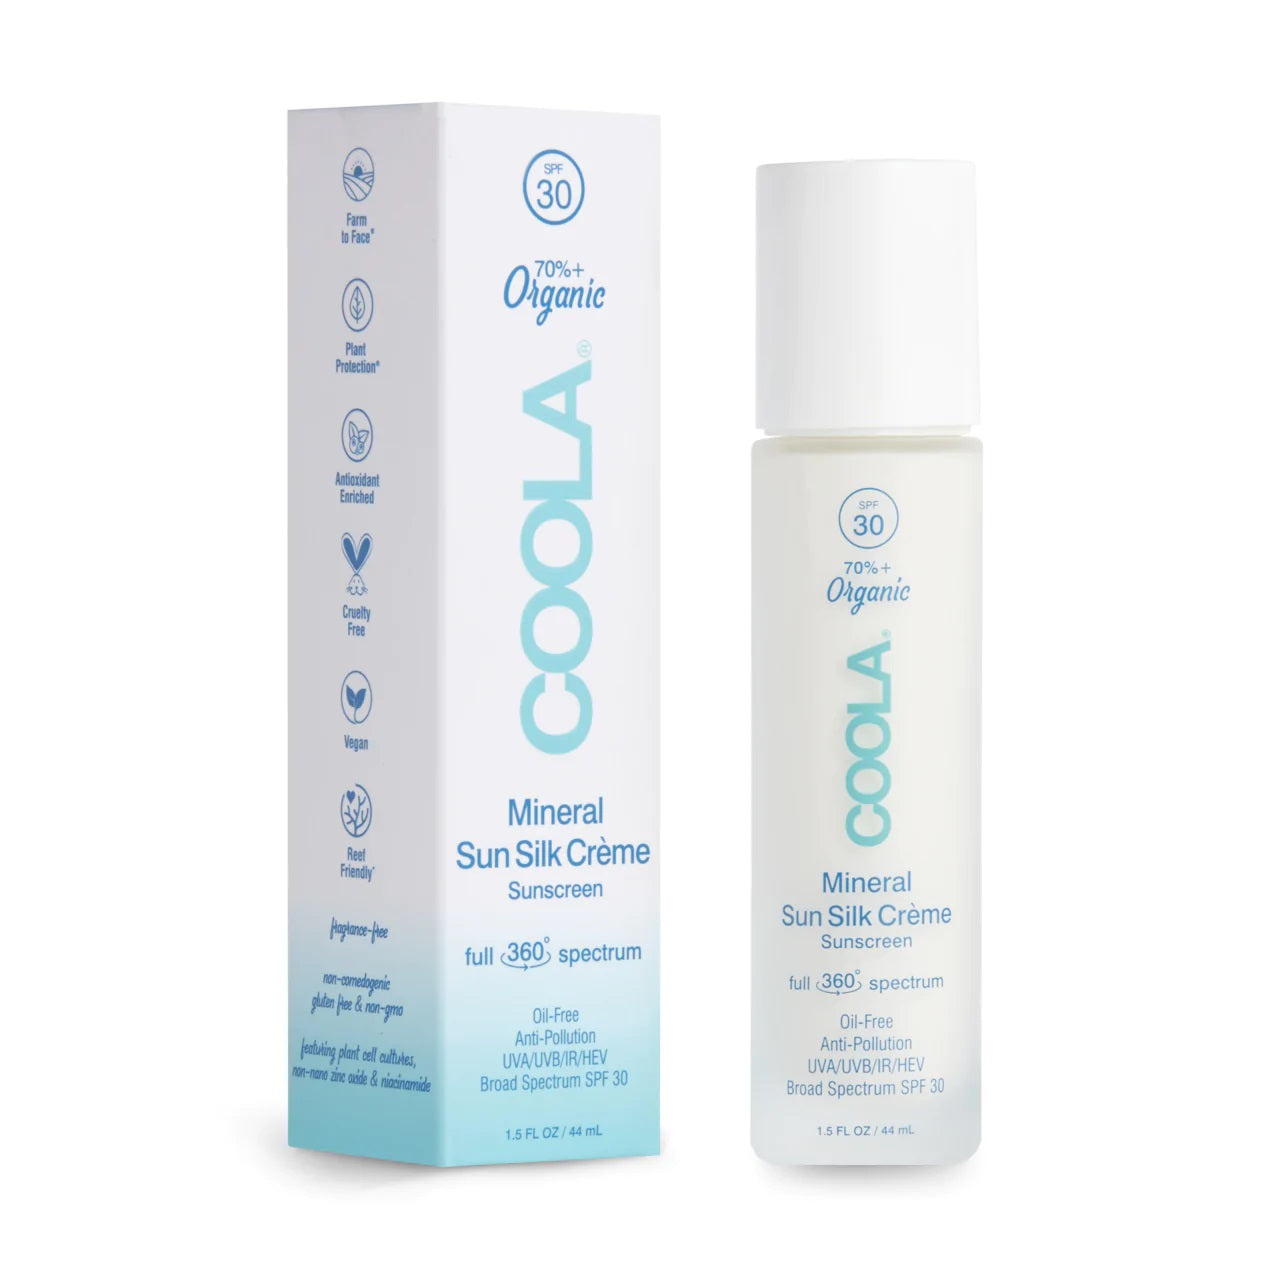 COOLA Mineral Sun Silk Creme Organic Face Sunscreen SPF 30